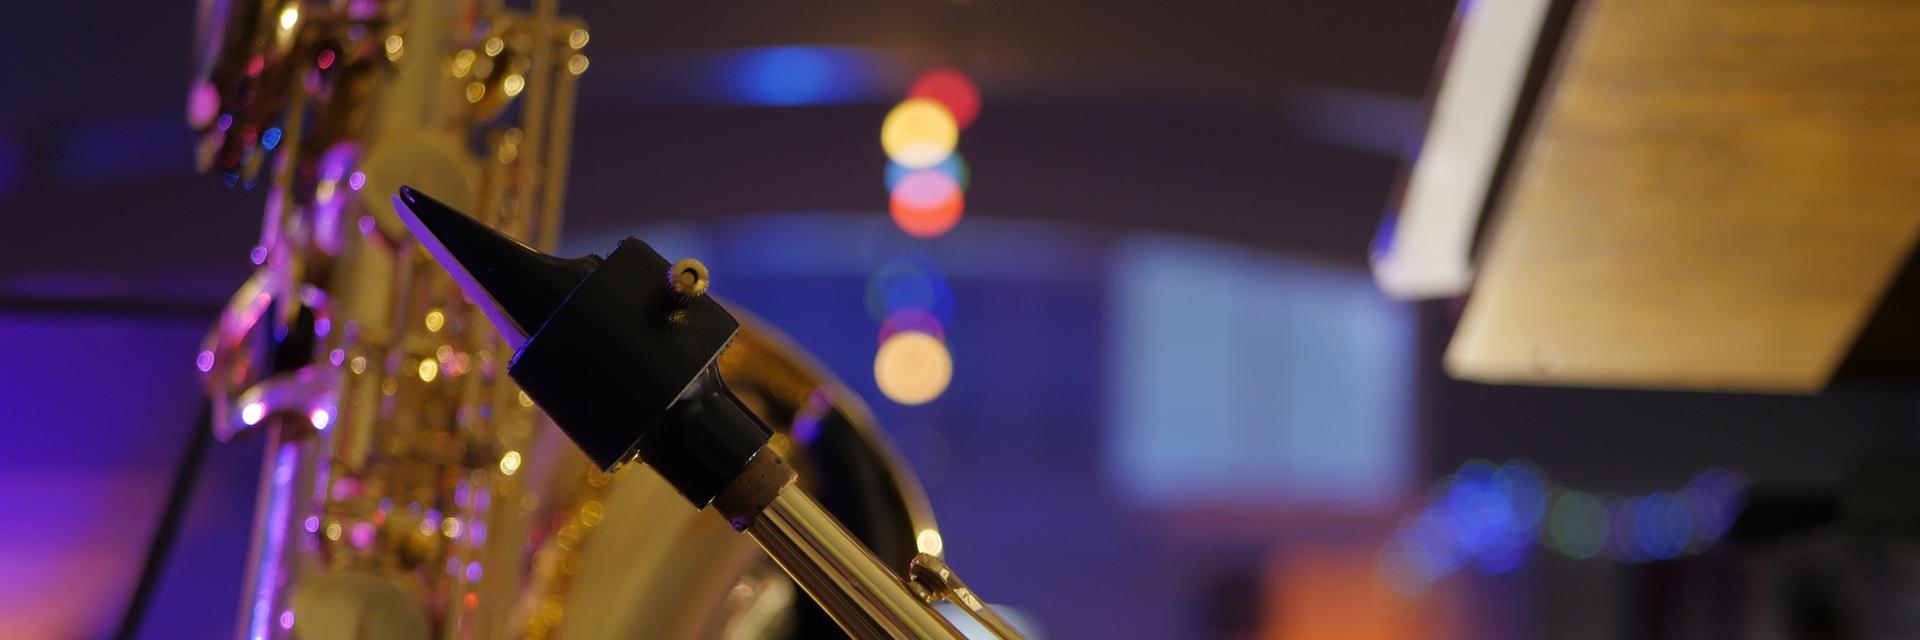 Saxofon (c) www.pixabay.com